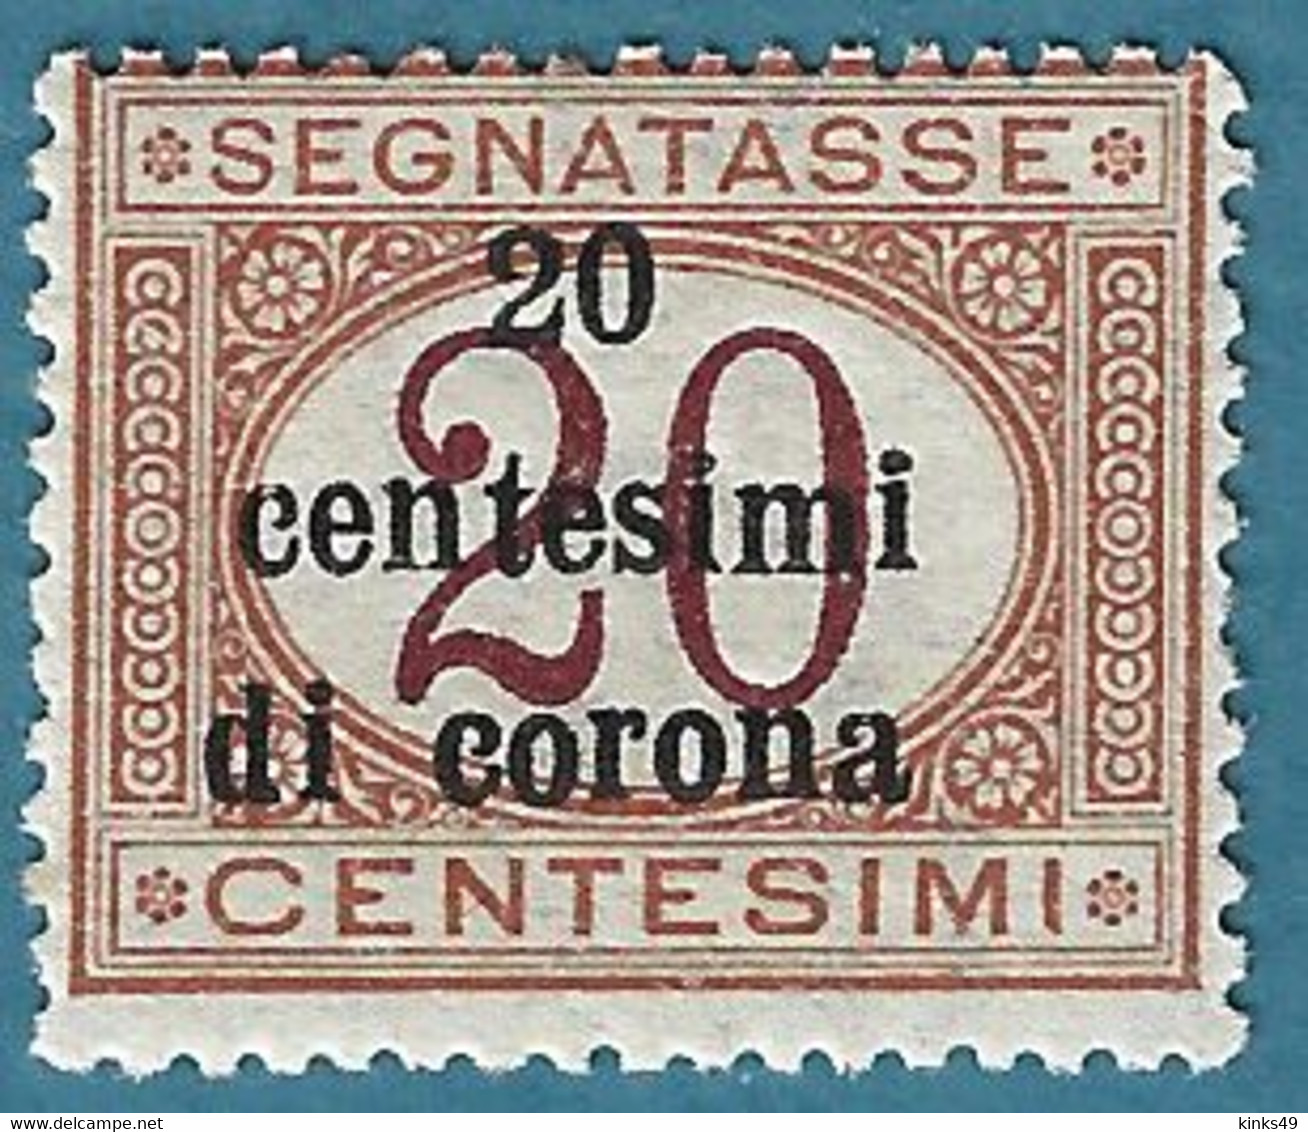 532> ITALIA Regno < TRENTO E TRIESTE Segnatasse Sovrastampati In Centesimi Di Corona > 1919 1 Da Centesimi 20 - Nuovo = - Trentino & Triest